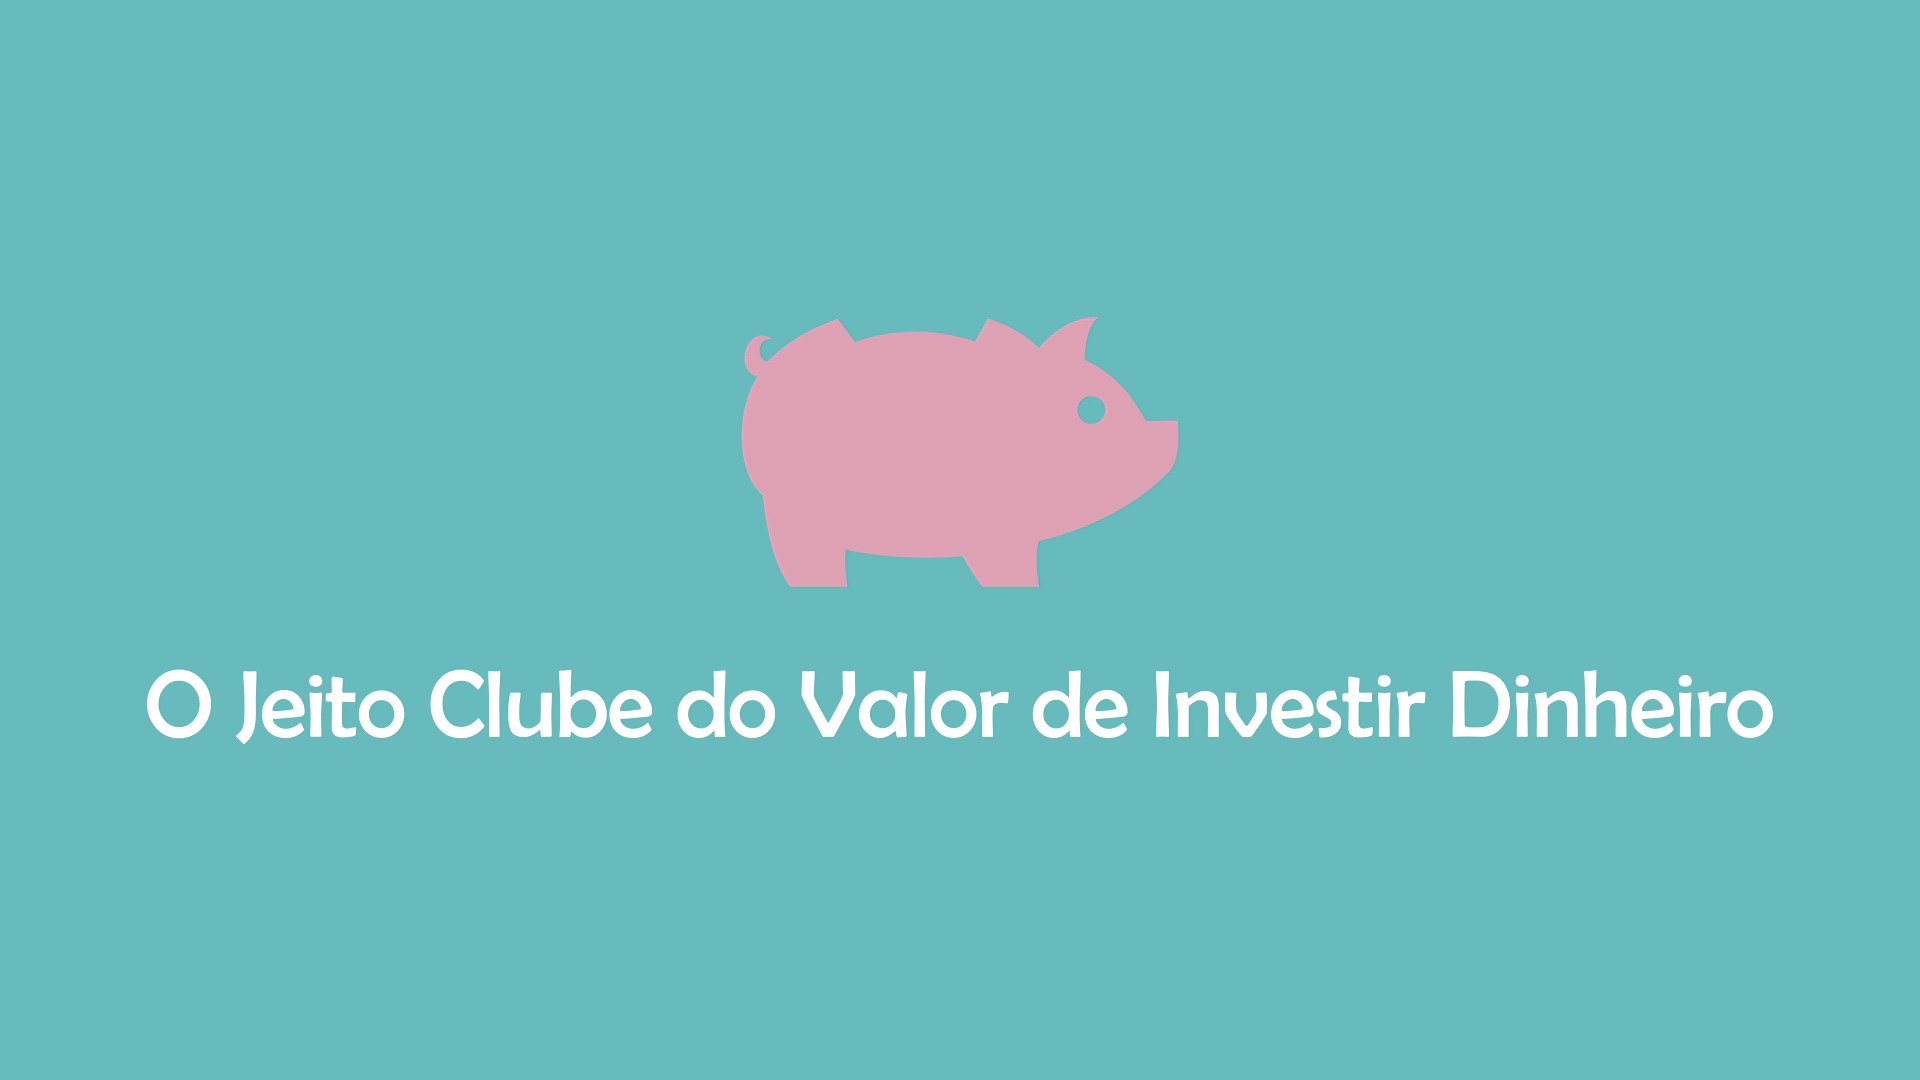 Ramiro Gomes Ferreira (Clube do Valor) - O Jeito Clube do Valor de Investir Dinheiro